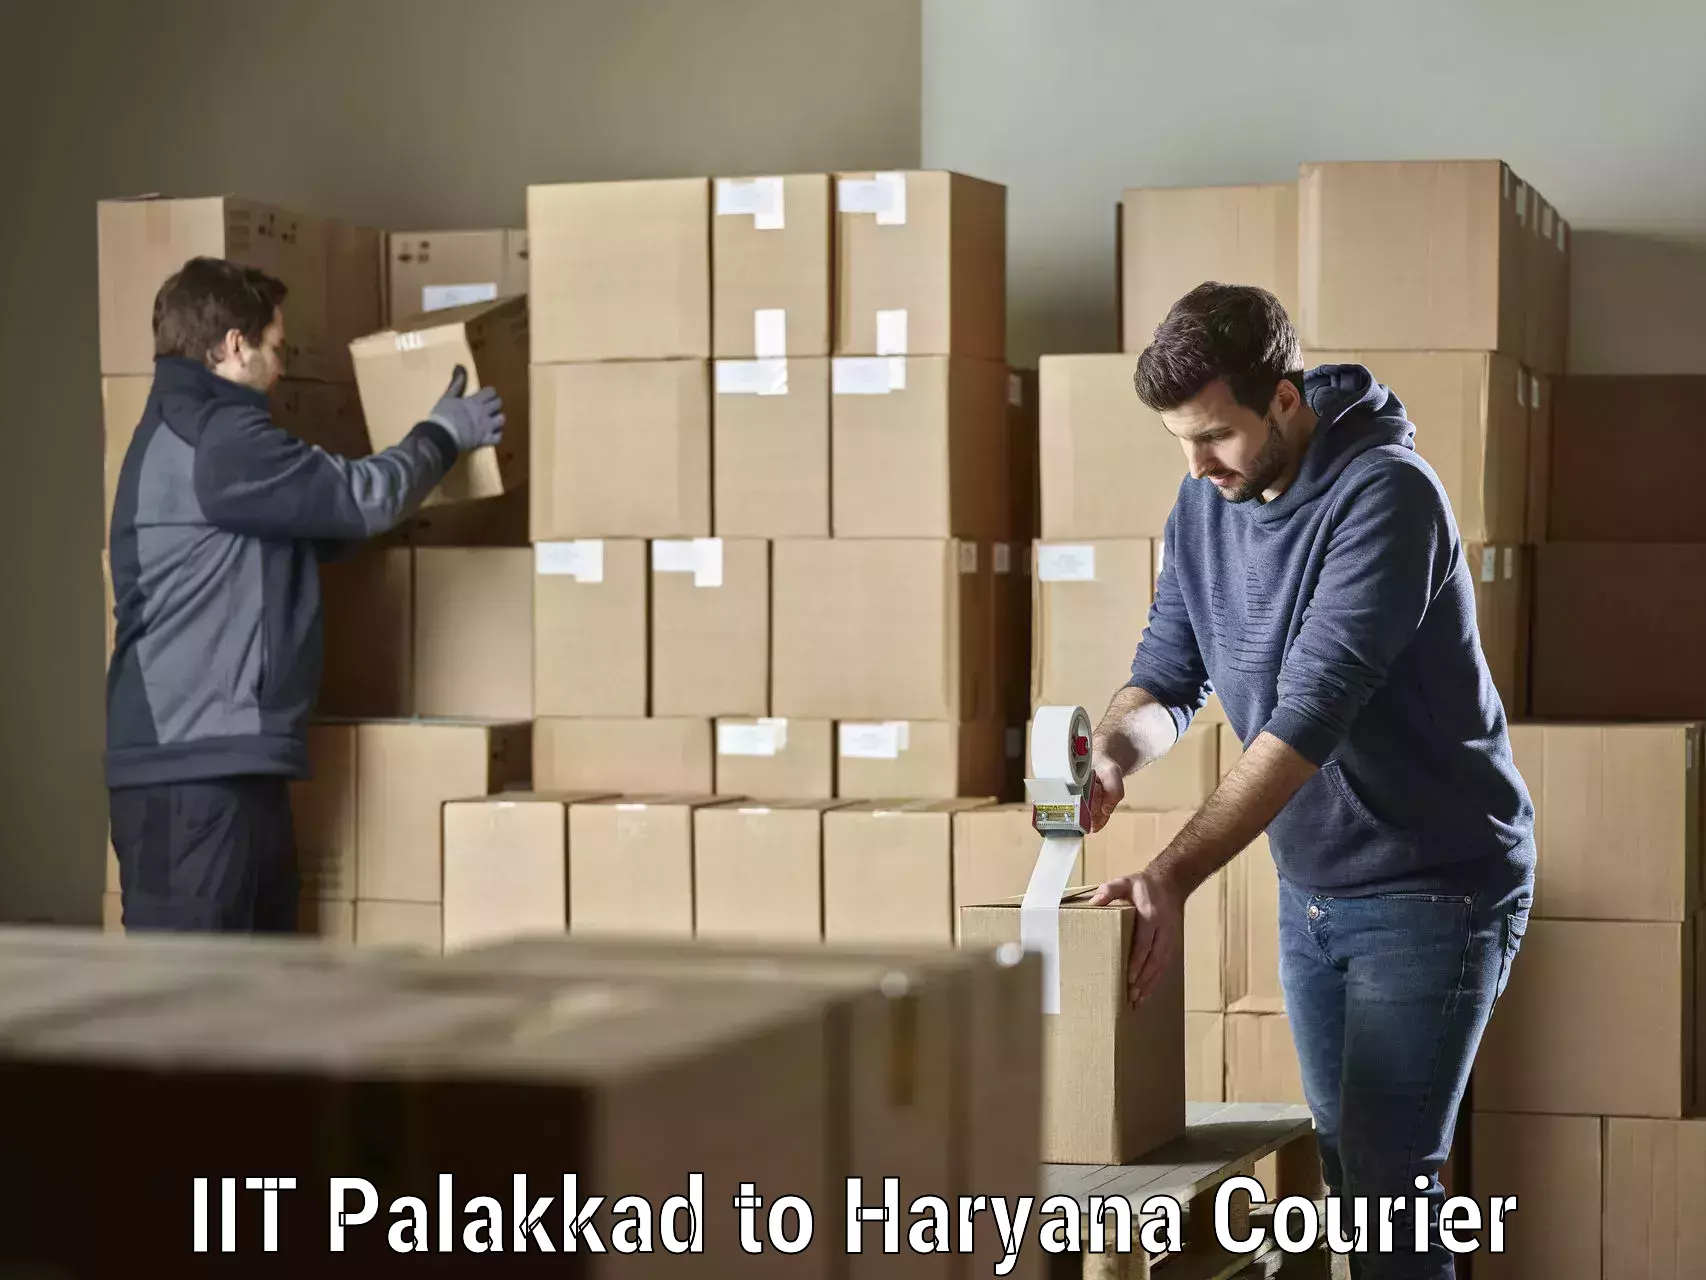 Express logistics service IIT Palakkad to Haryana